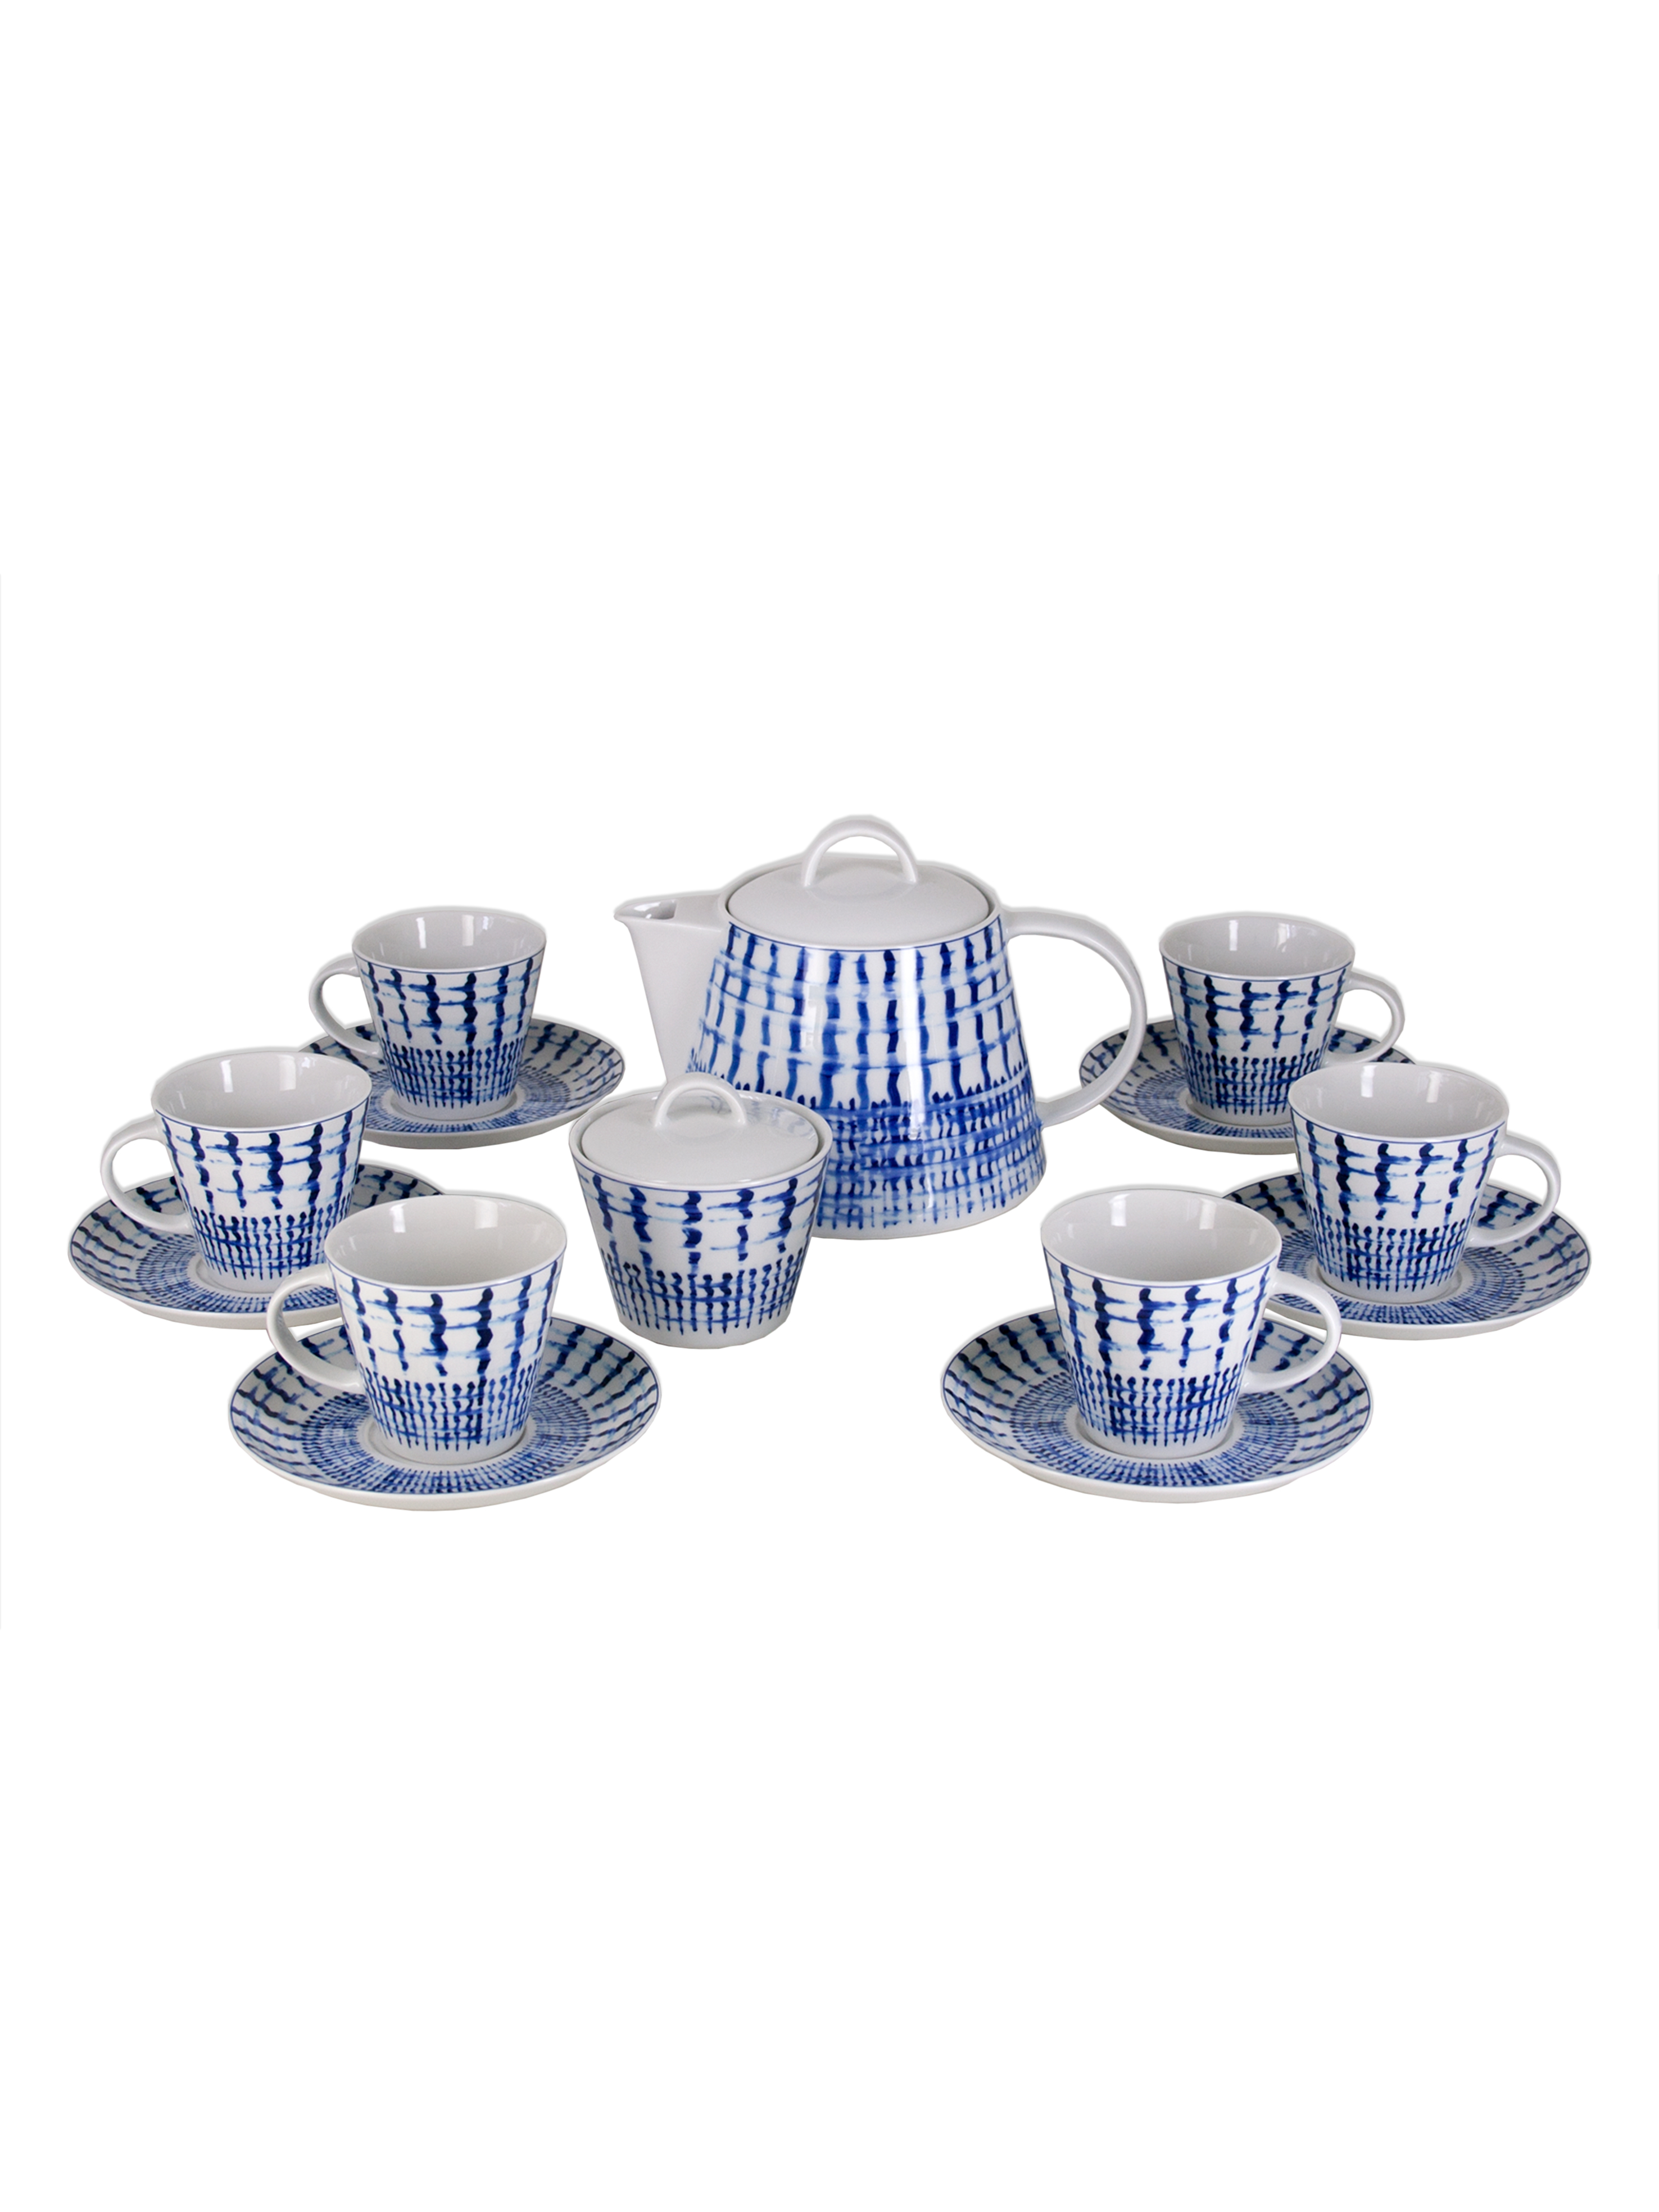 Чайный сервиз Tom на 6 персон 16 предметов декор Синий декор. Фарфор Тхун, Чехия.